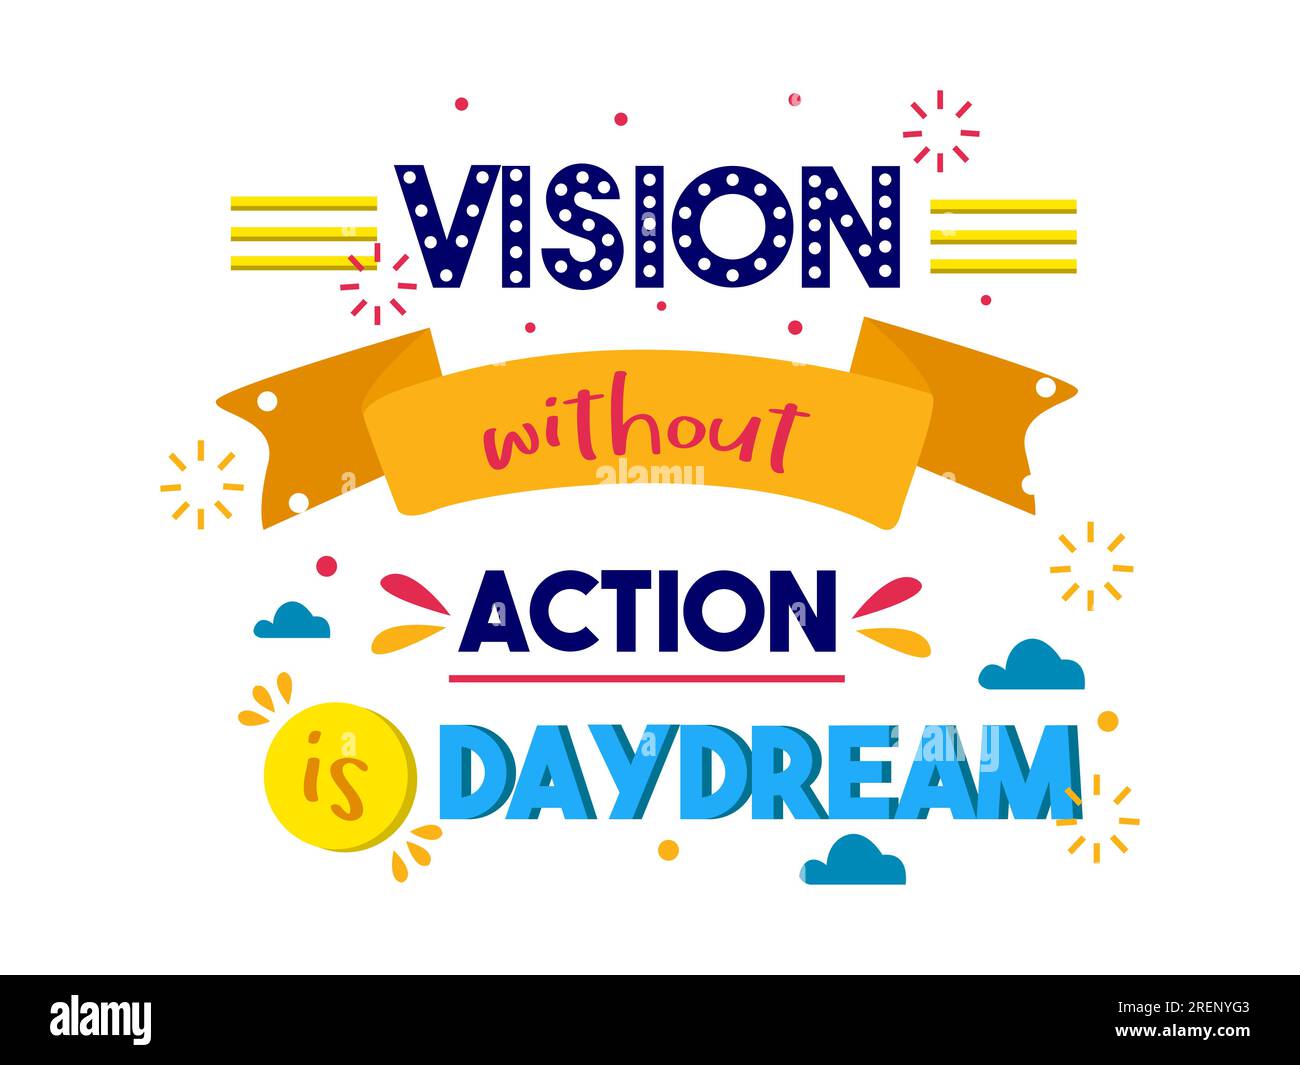 Vision ohne Aktion ist ein Tagtraum, inspirierende Zitate, alltägliche Motivation, positives Sprichwort, Typografie, farbenfroher Text Stock Vektor